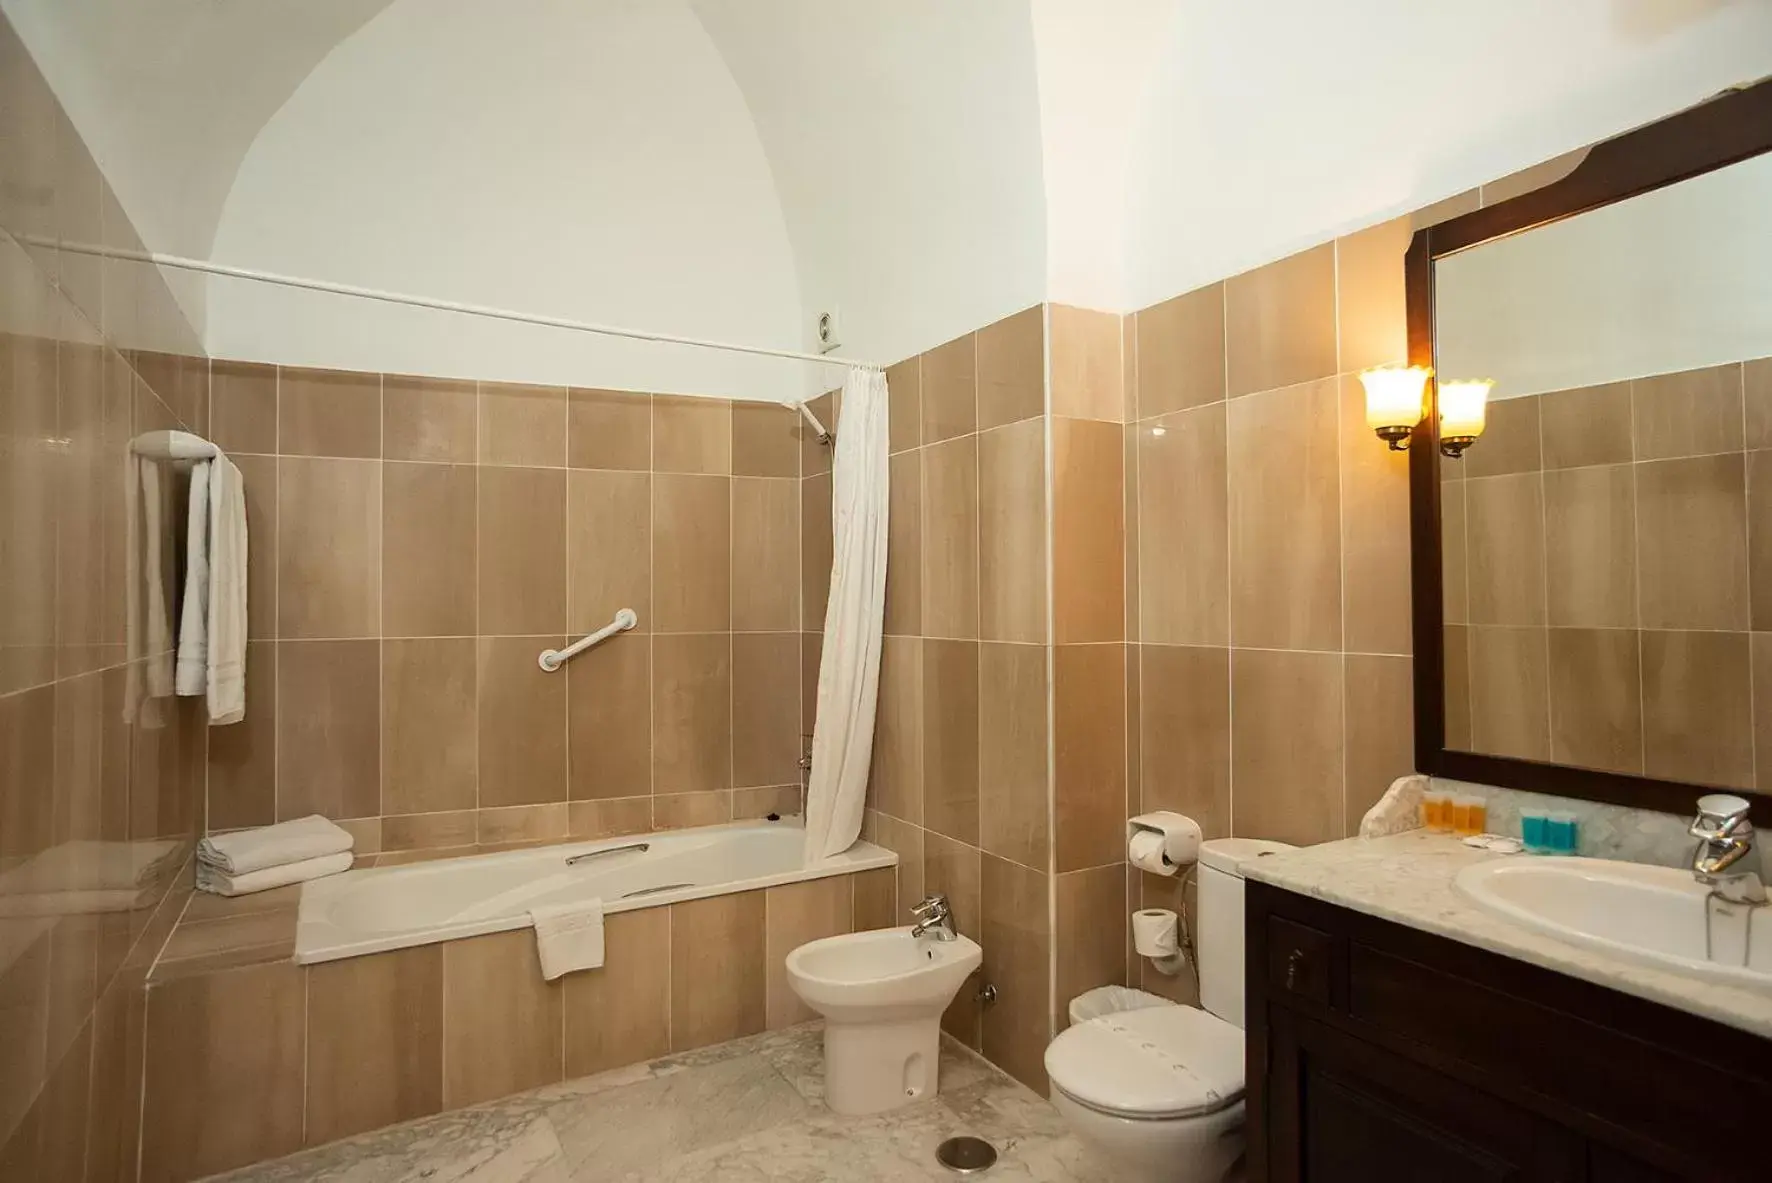 Bathroom in Hotel Casa Palacio la Sal